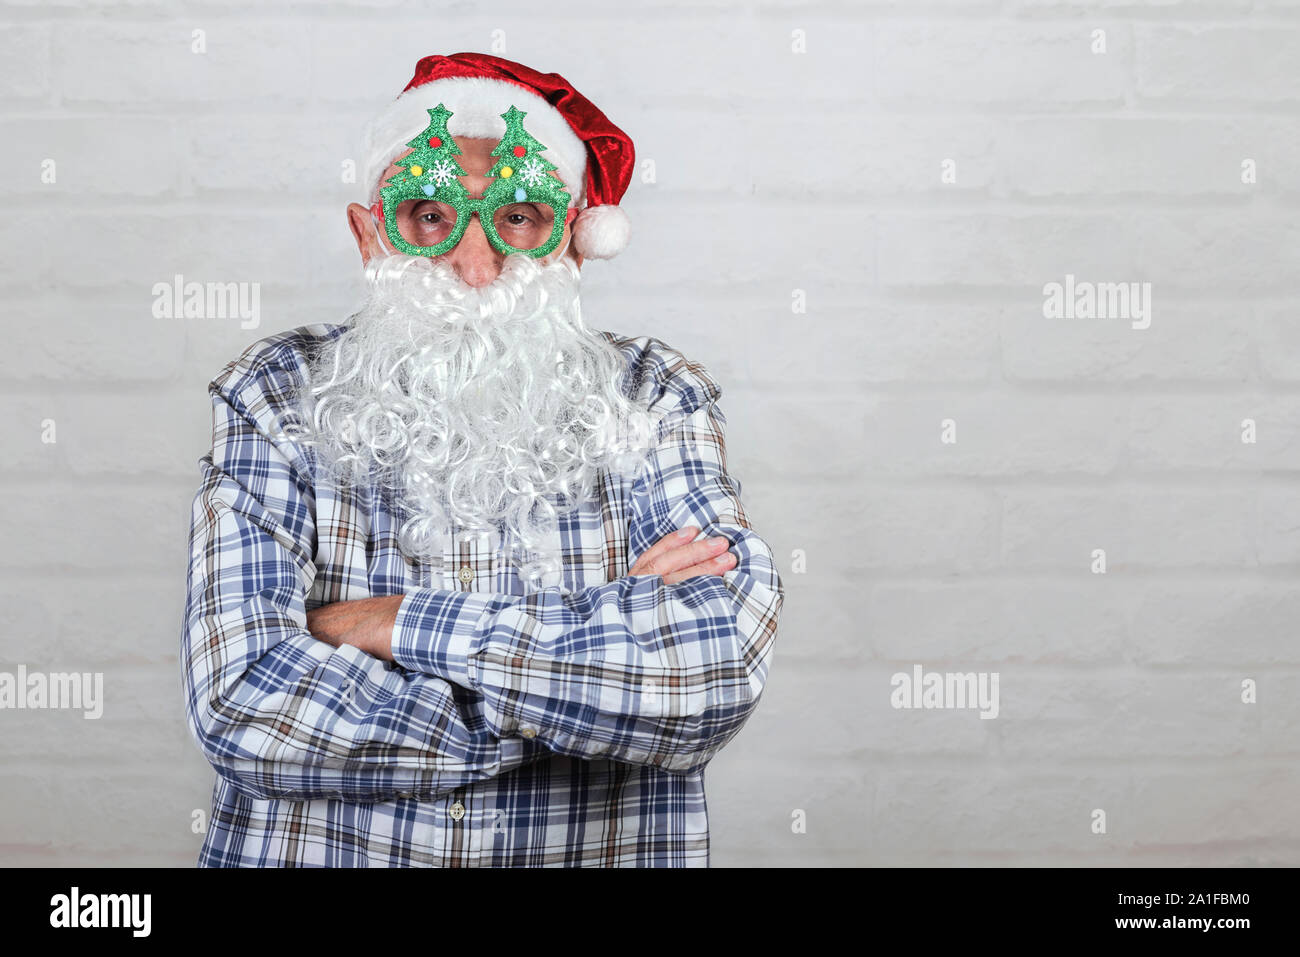 Grand-père Wearing Christmas Santa Claus Hat et beard sur fond brique Banque D'Images